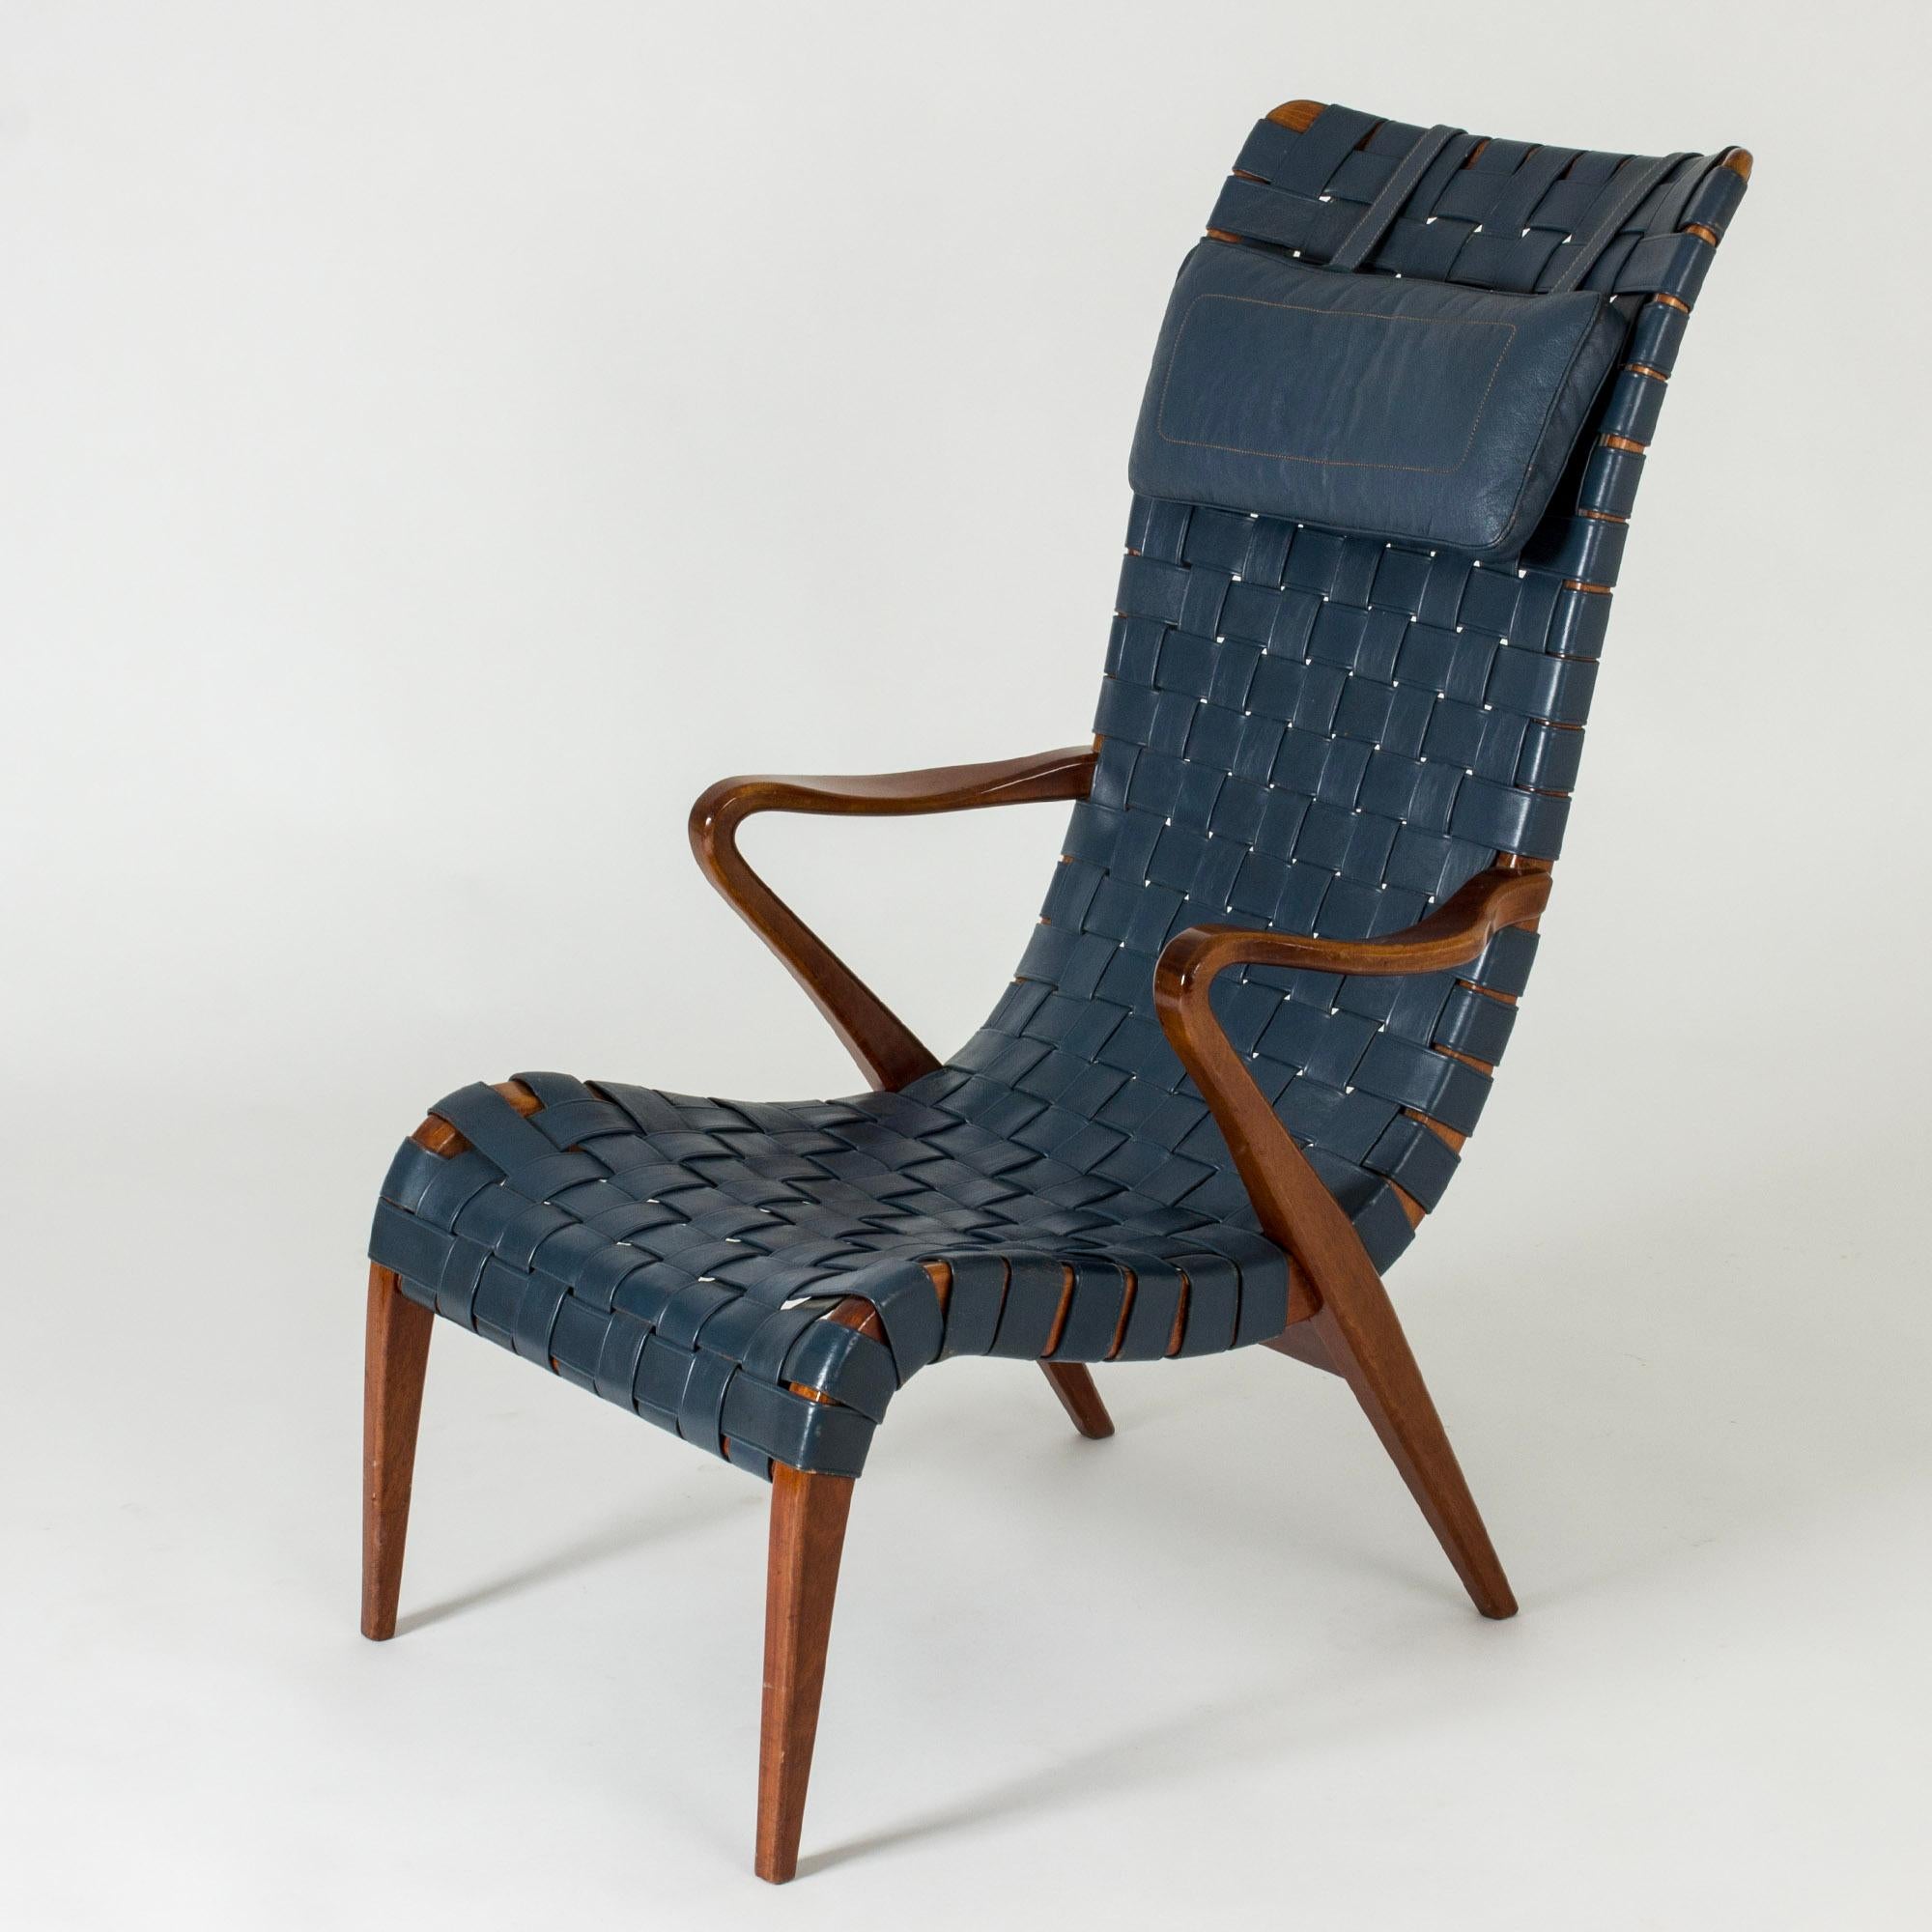 Superbe chaise longue d'Axel Larsson, en teck, avec cuir bleu ondulé d'origine. Coussin de nuque. Les lignes audacieuses créent une silhouette très cool.